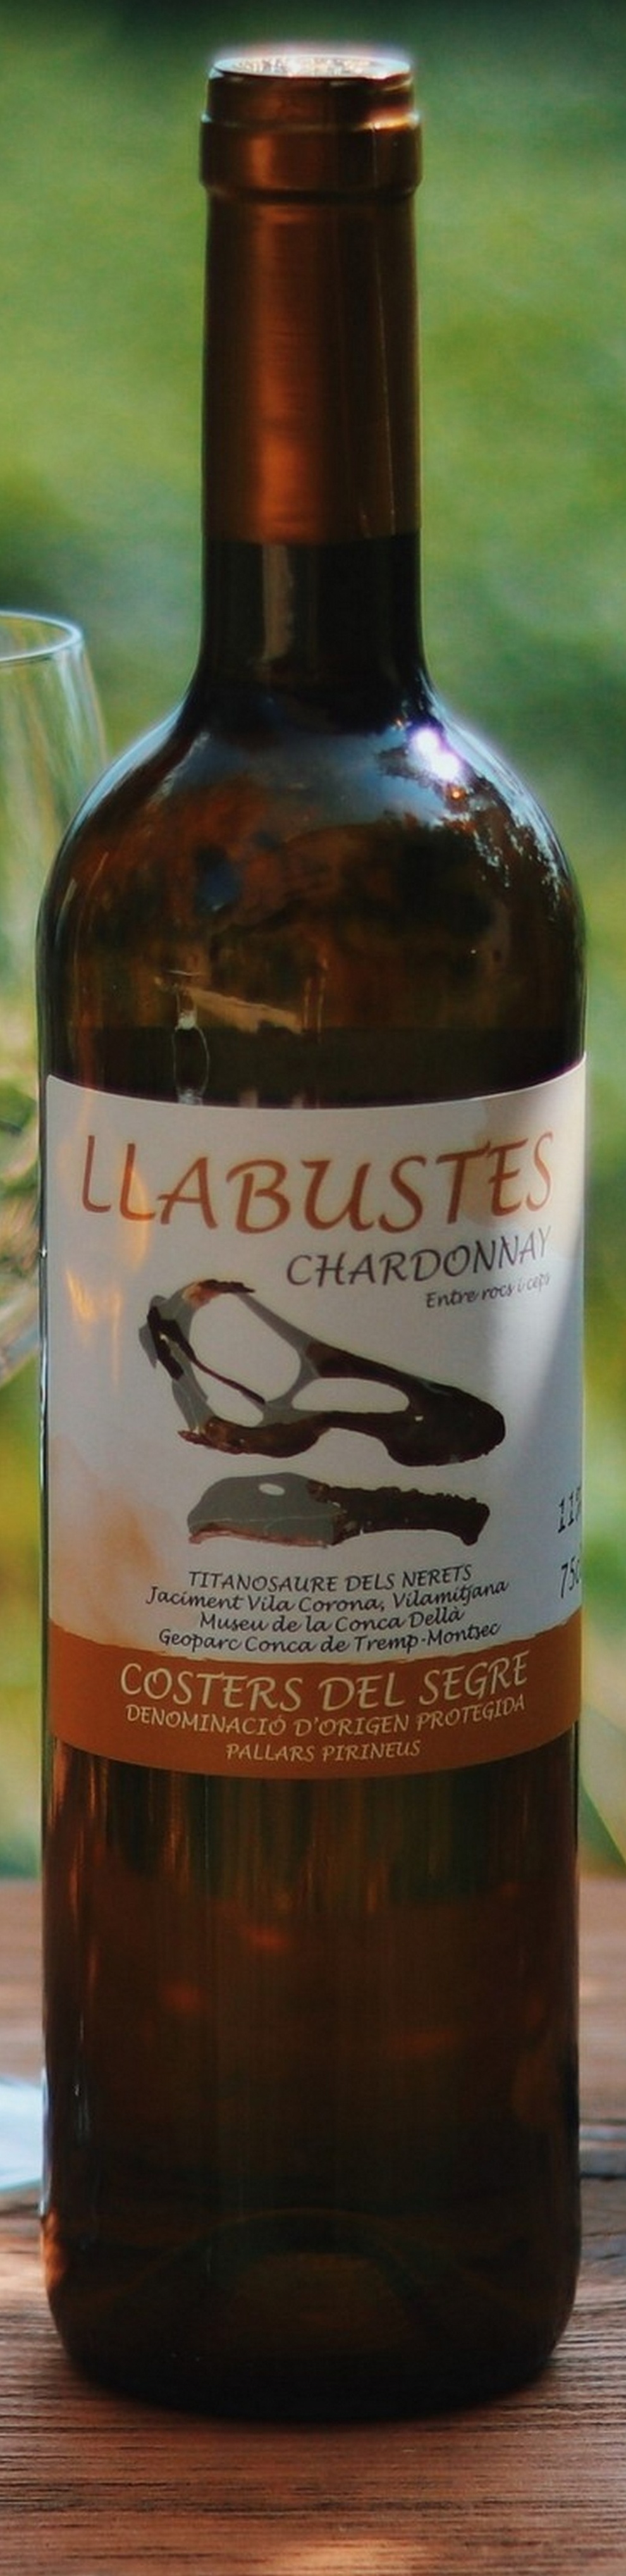 llabustes-chardonnay-2018